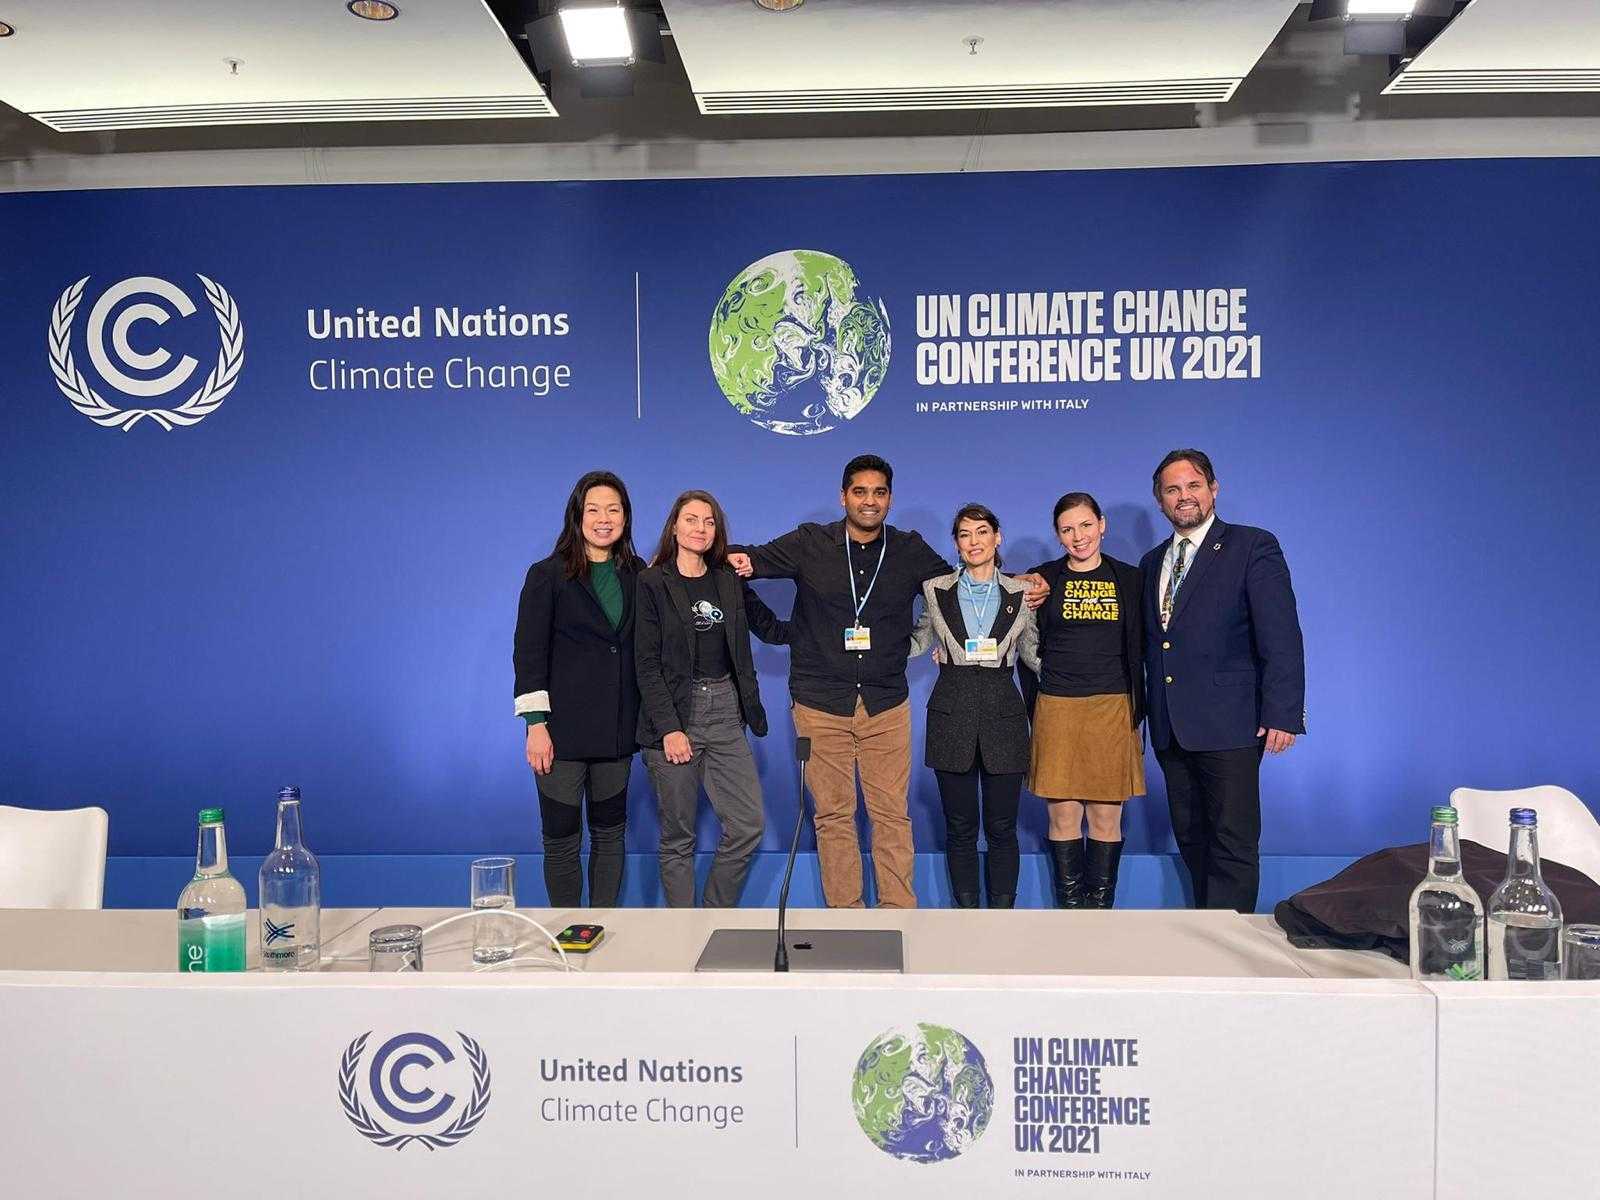 DigitalArt4Climate công bố những người chiến thắng cuộc thi tại COP26 19